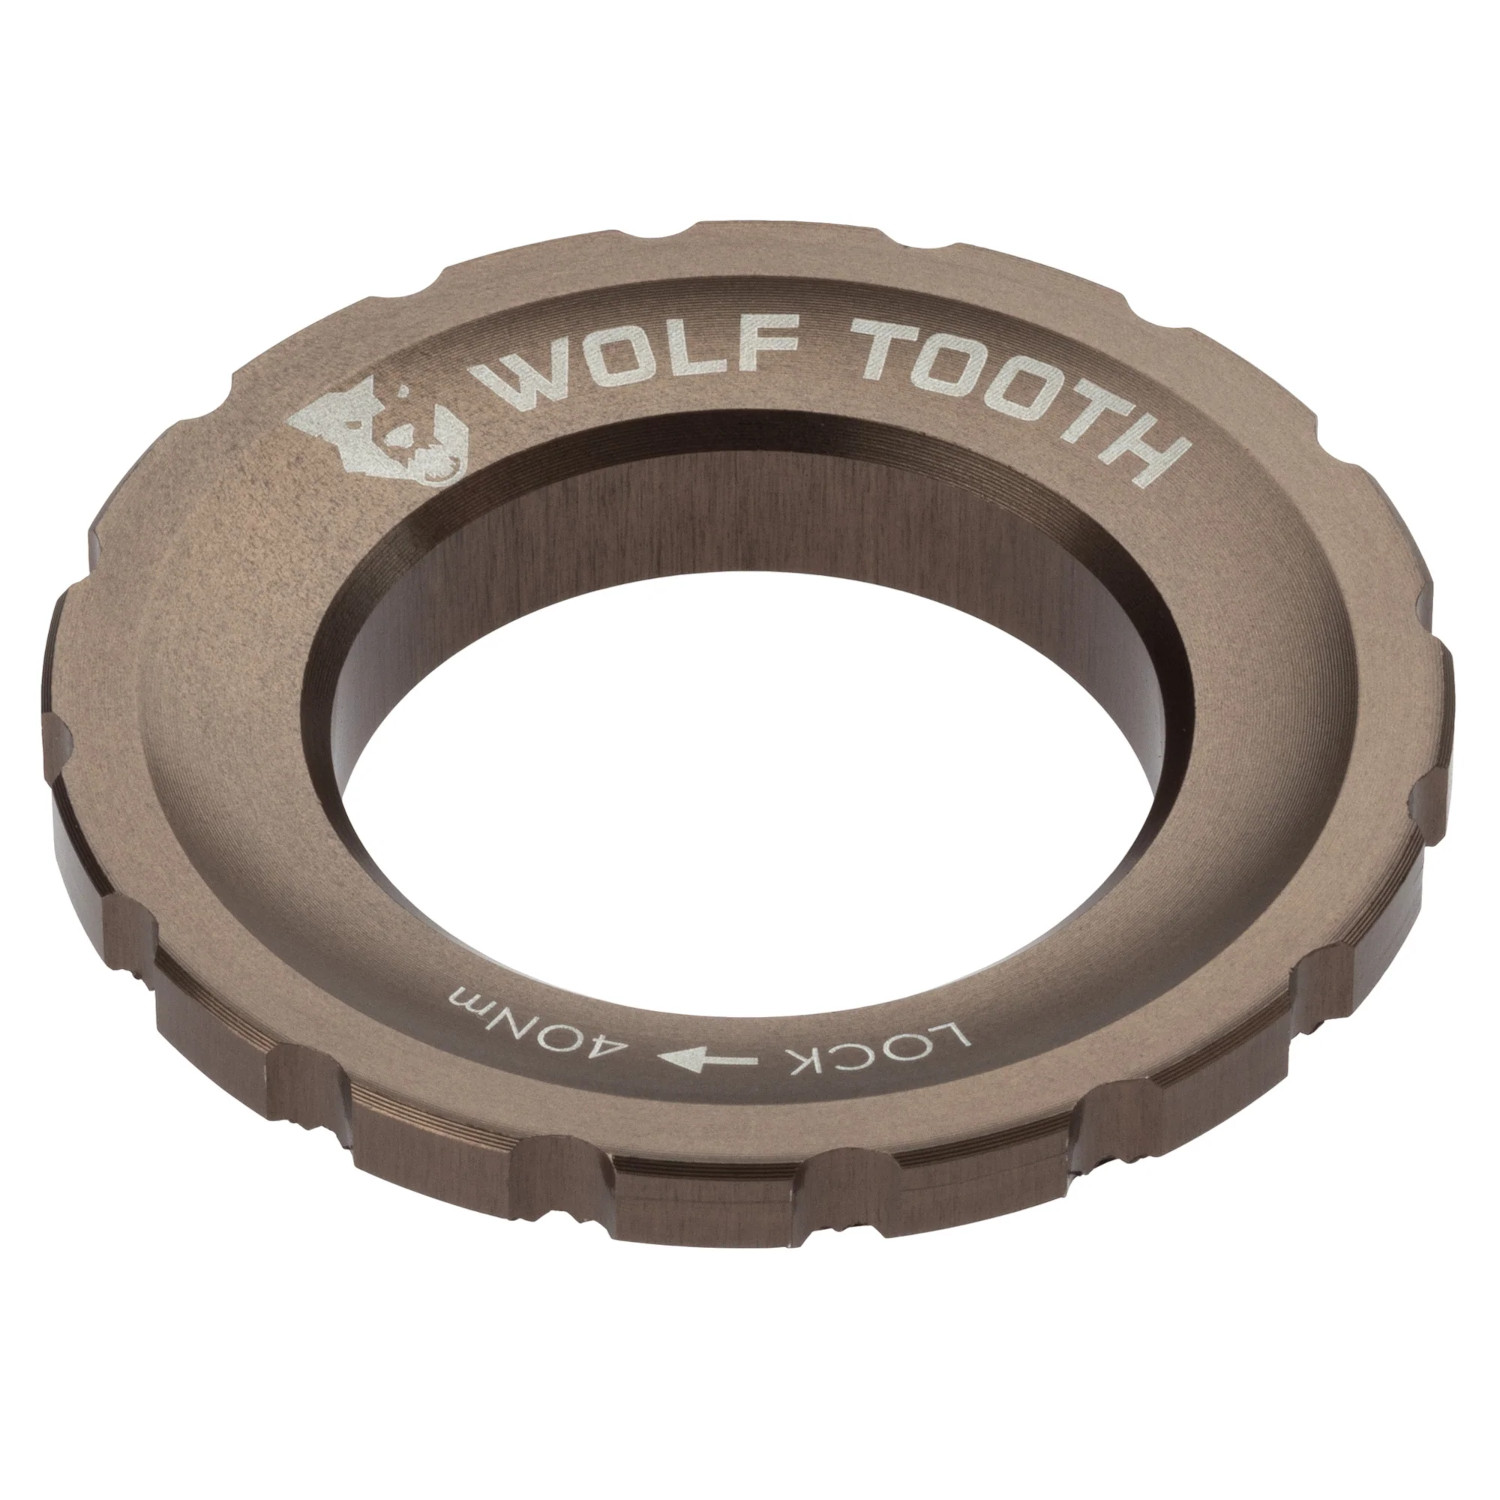 Produktbild von Wolf Tooth Centerlock Lockring - Außenverzahnung - espresso